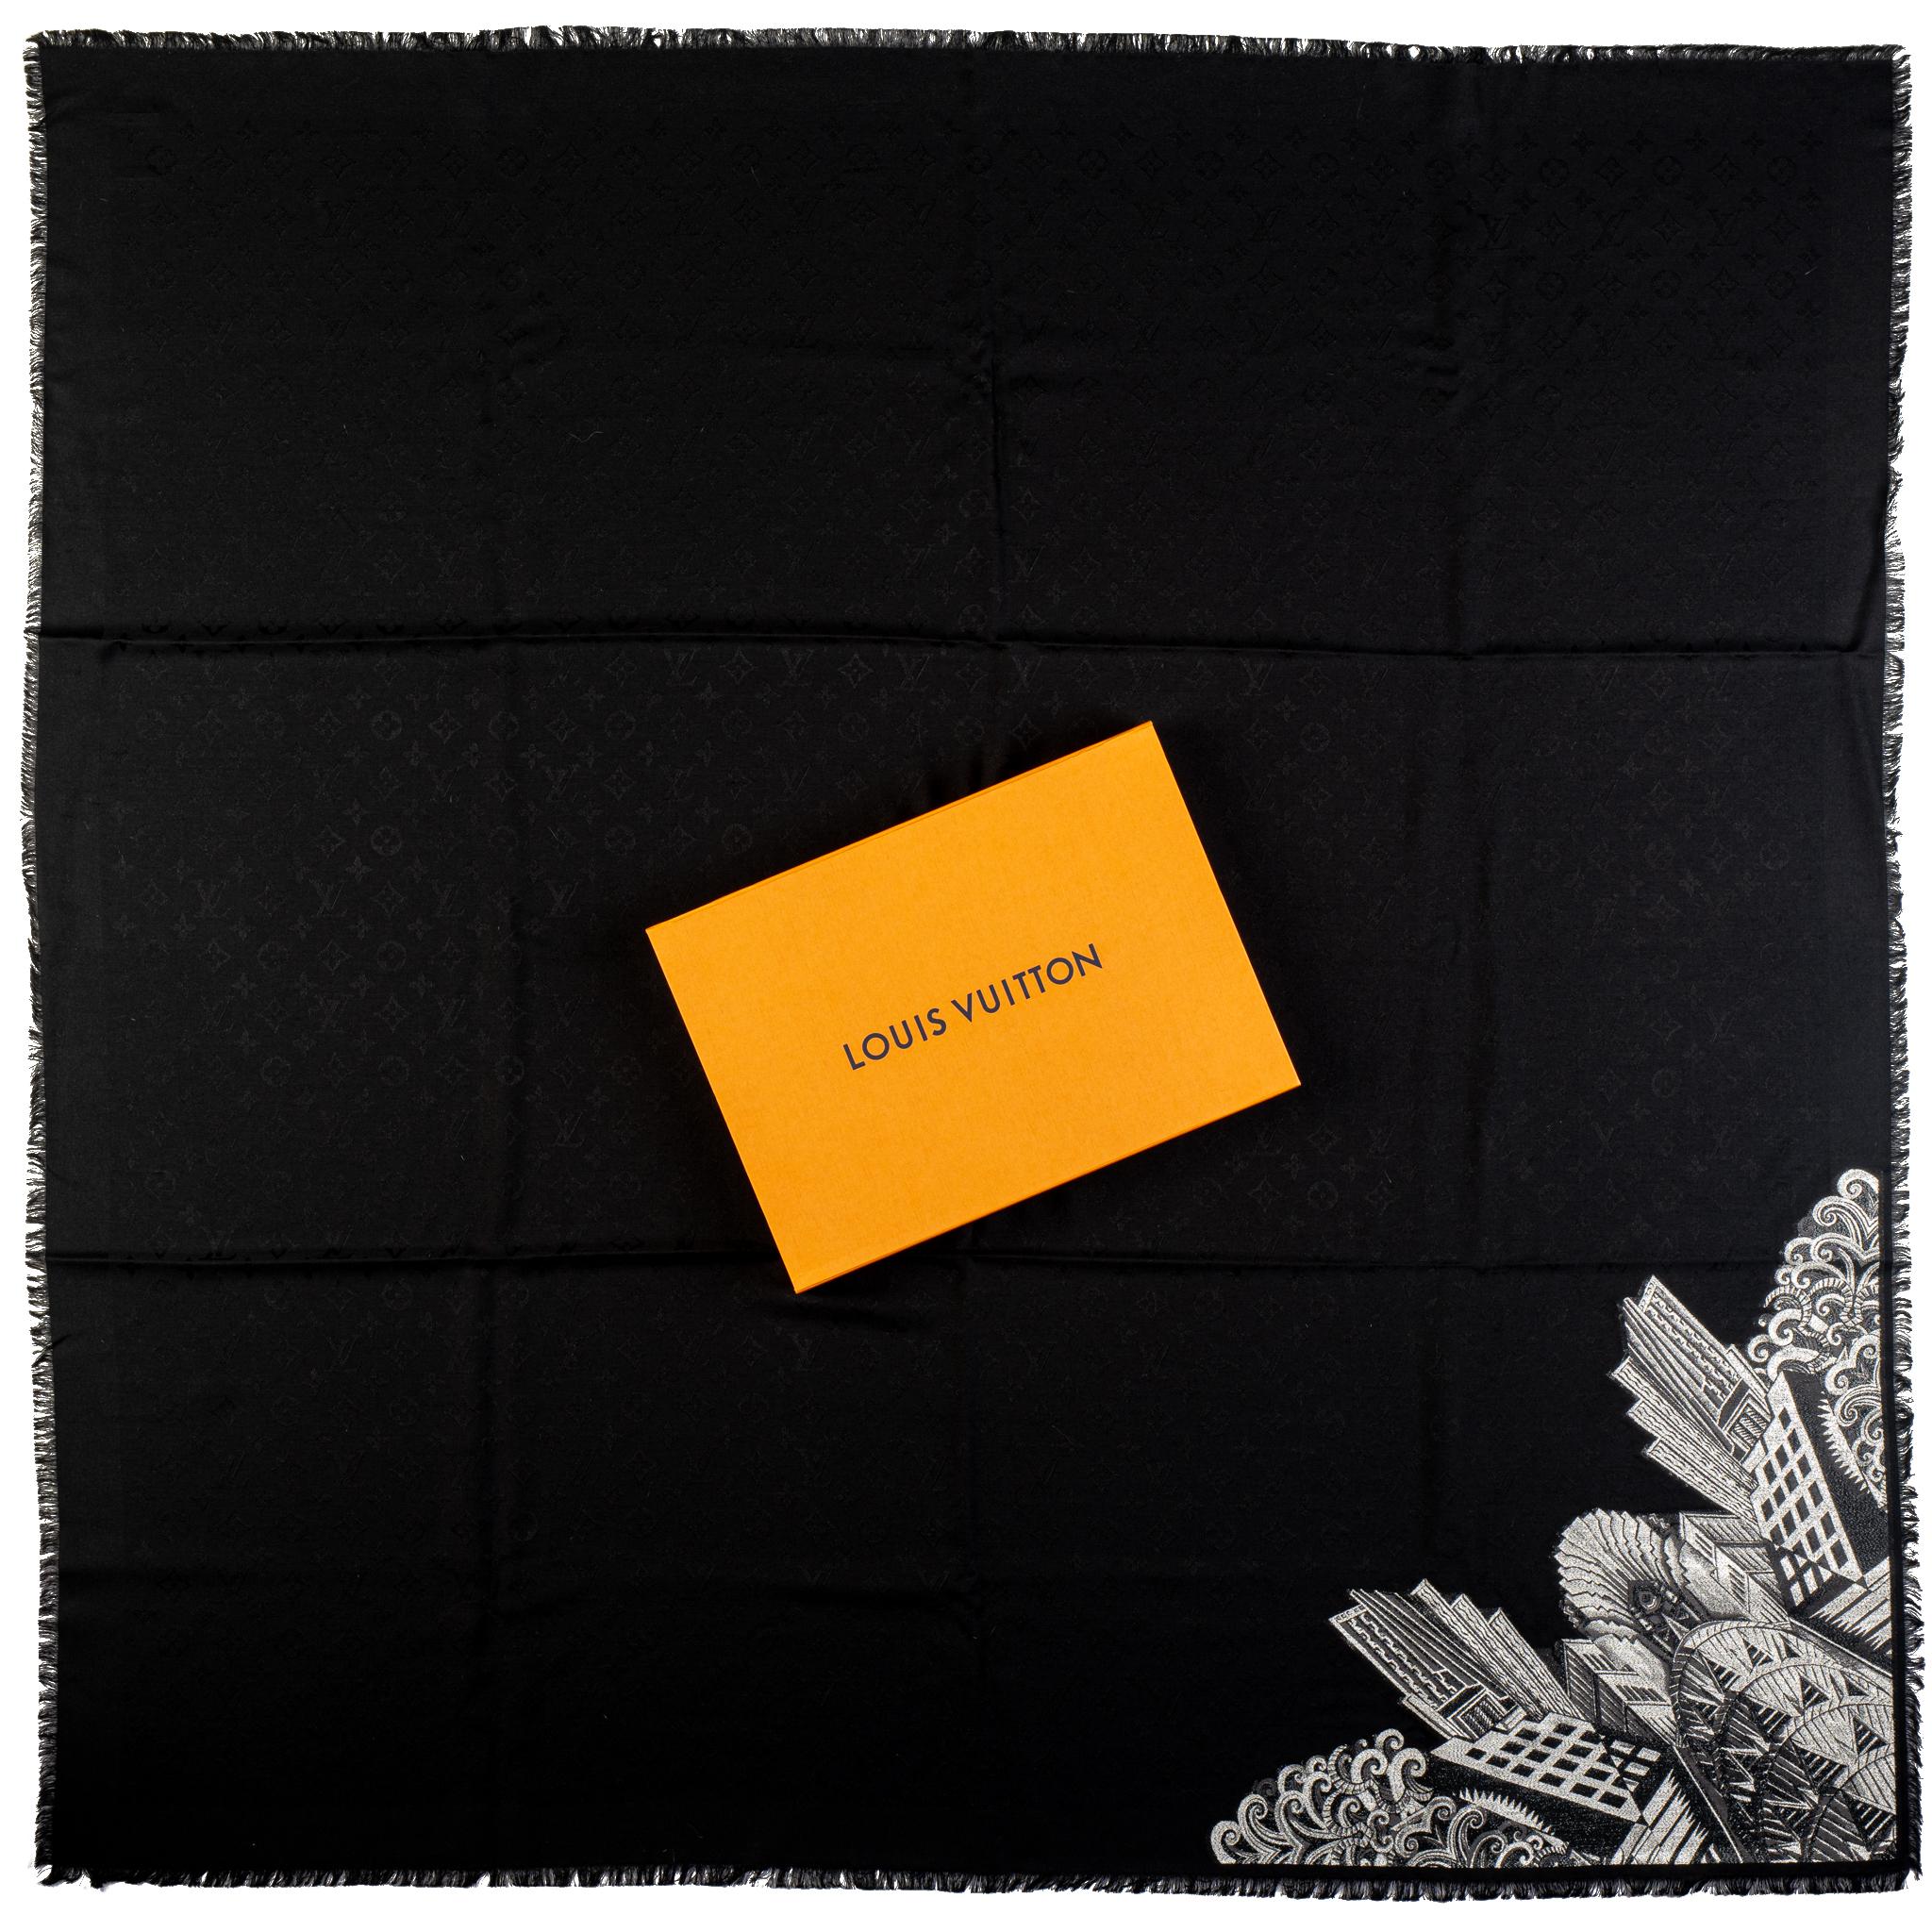 Vuitton edición limitada nuevo chal negro grande. Diseño de rascacielos de Nueva York. Combinación de seda y lana. Viene con caja original.